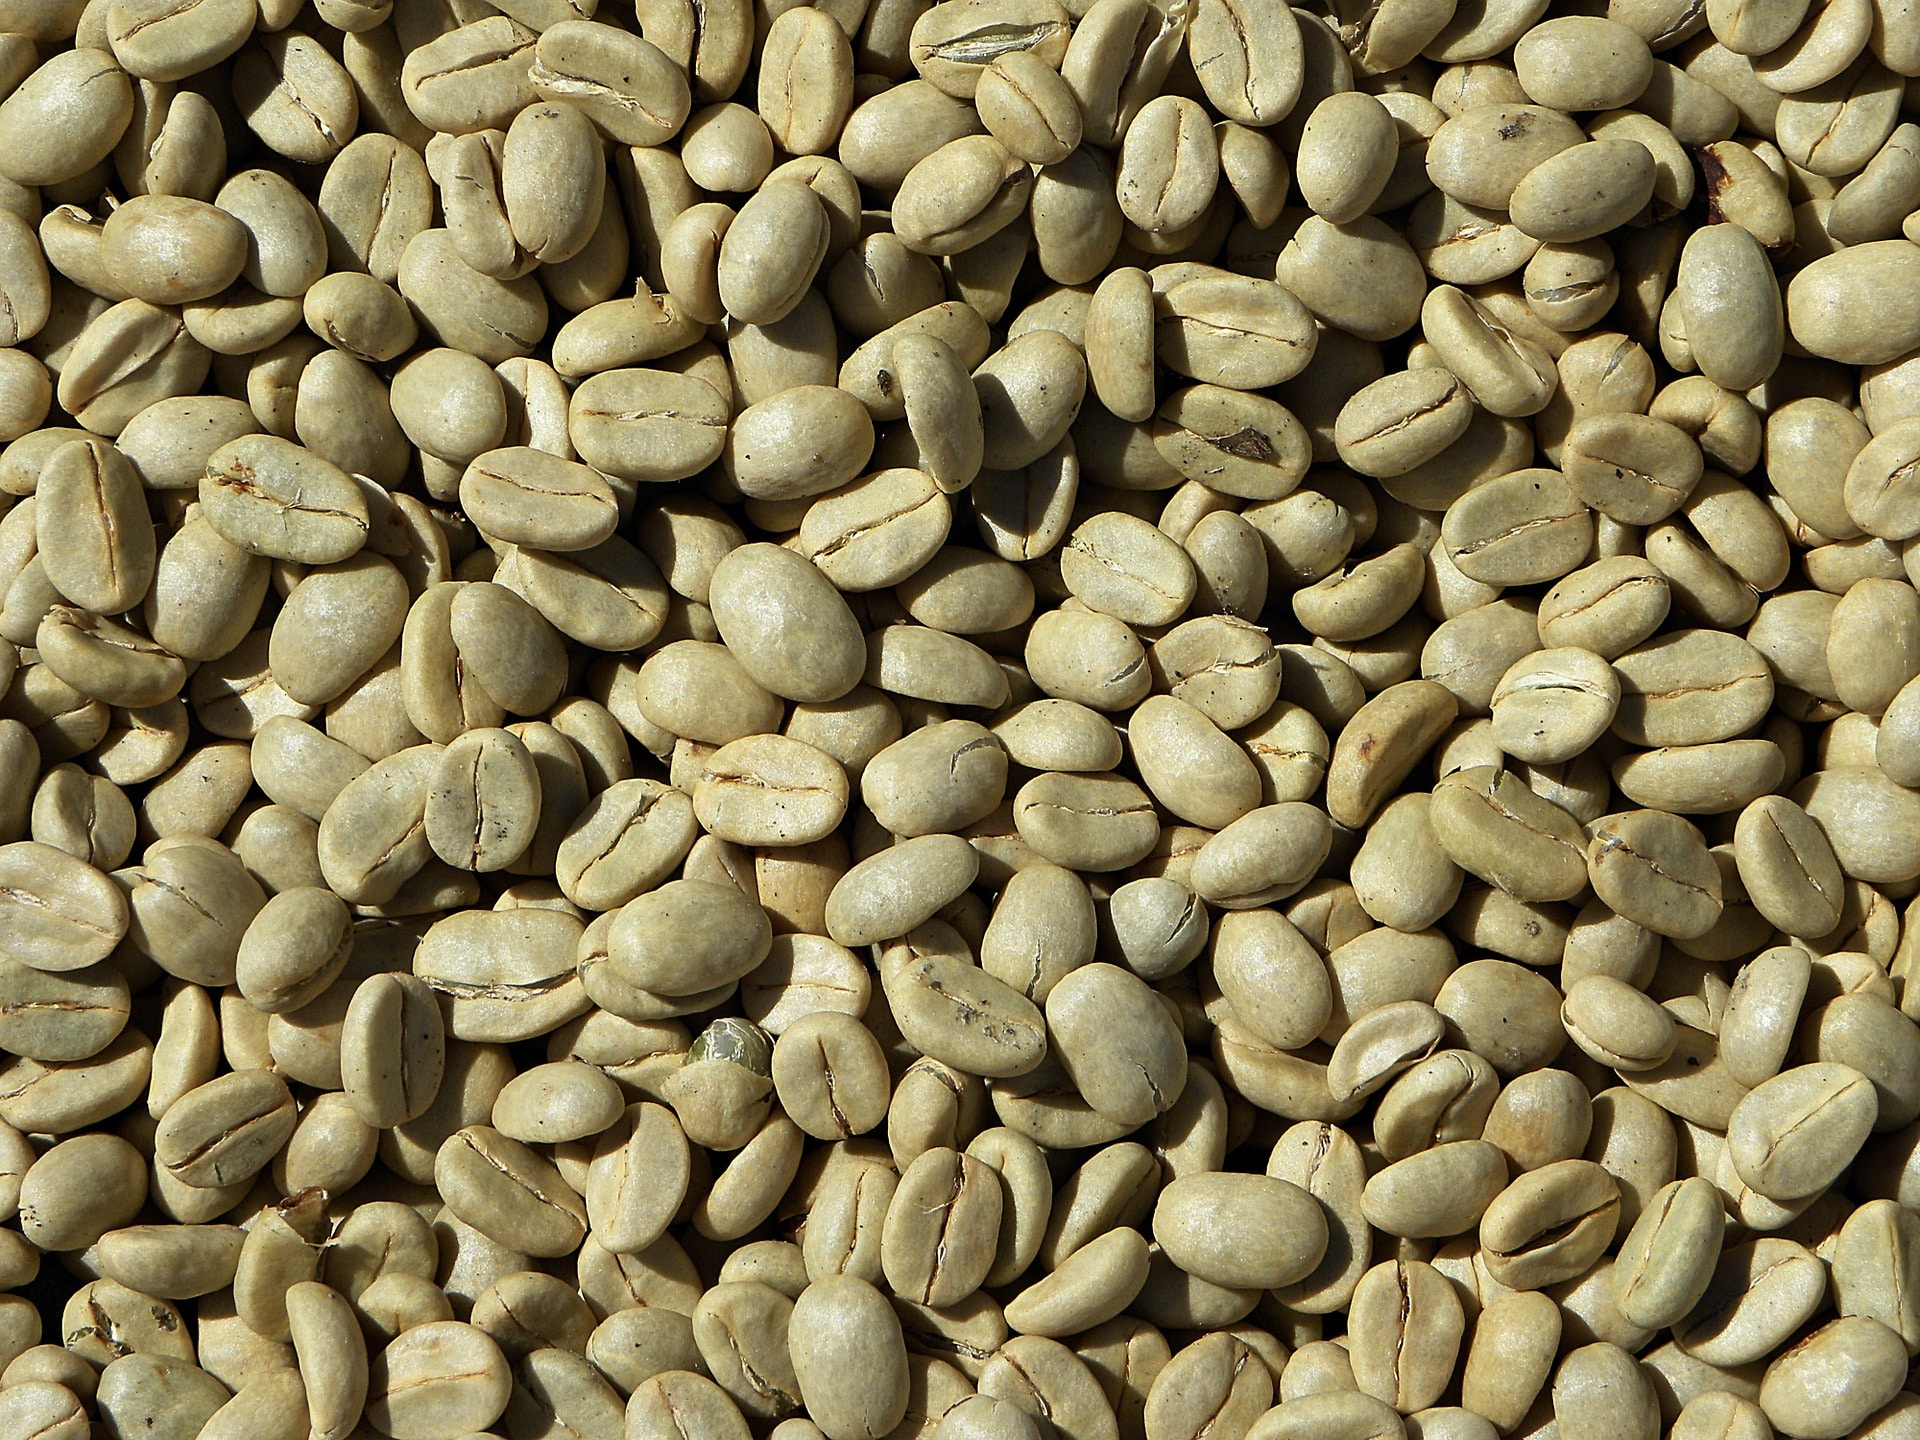 Zrna zelené kávy jsou opravdu velmi tvrdá / zdroj: pixabay.com